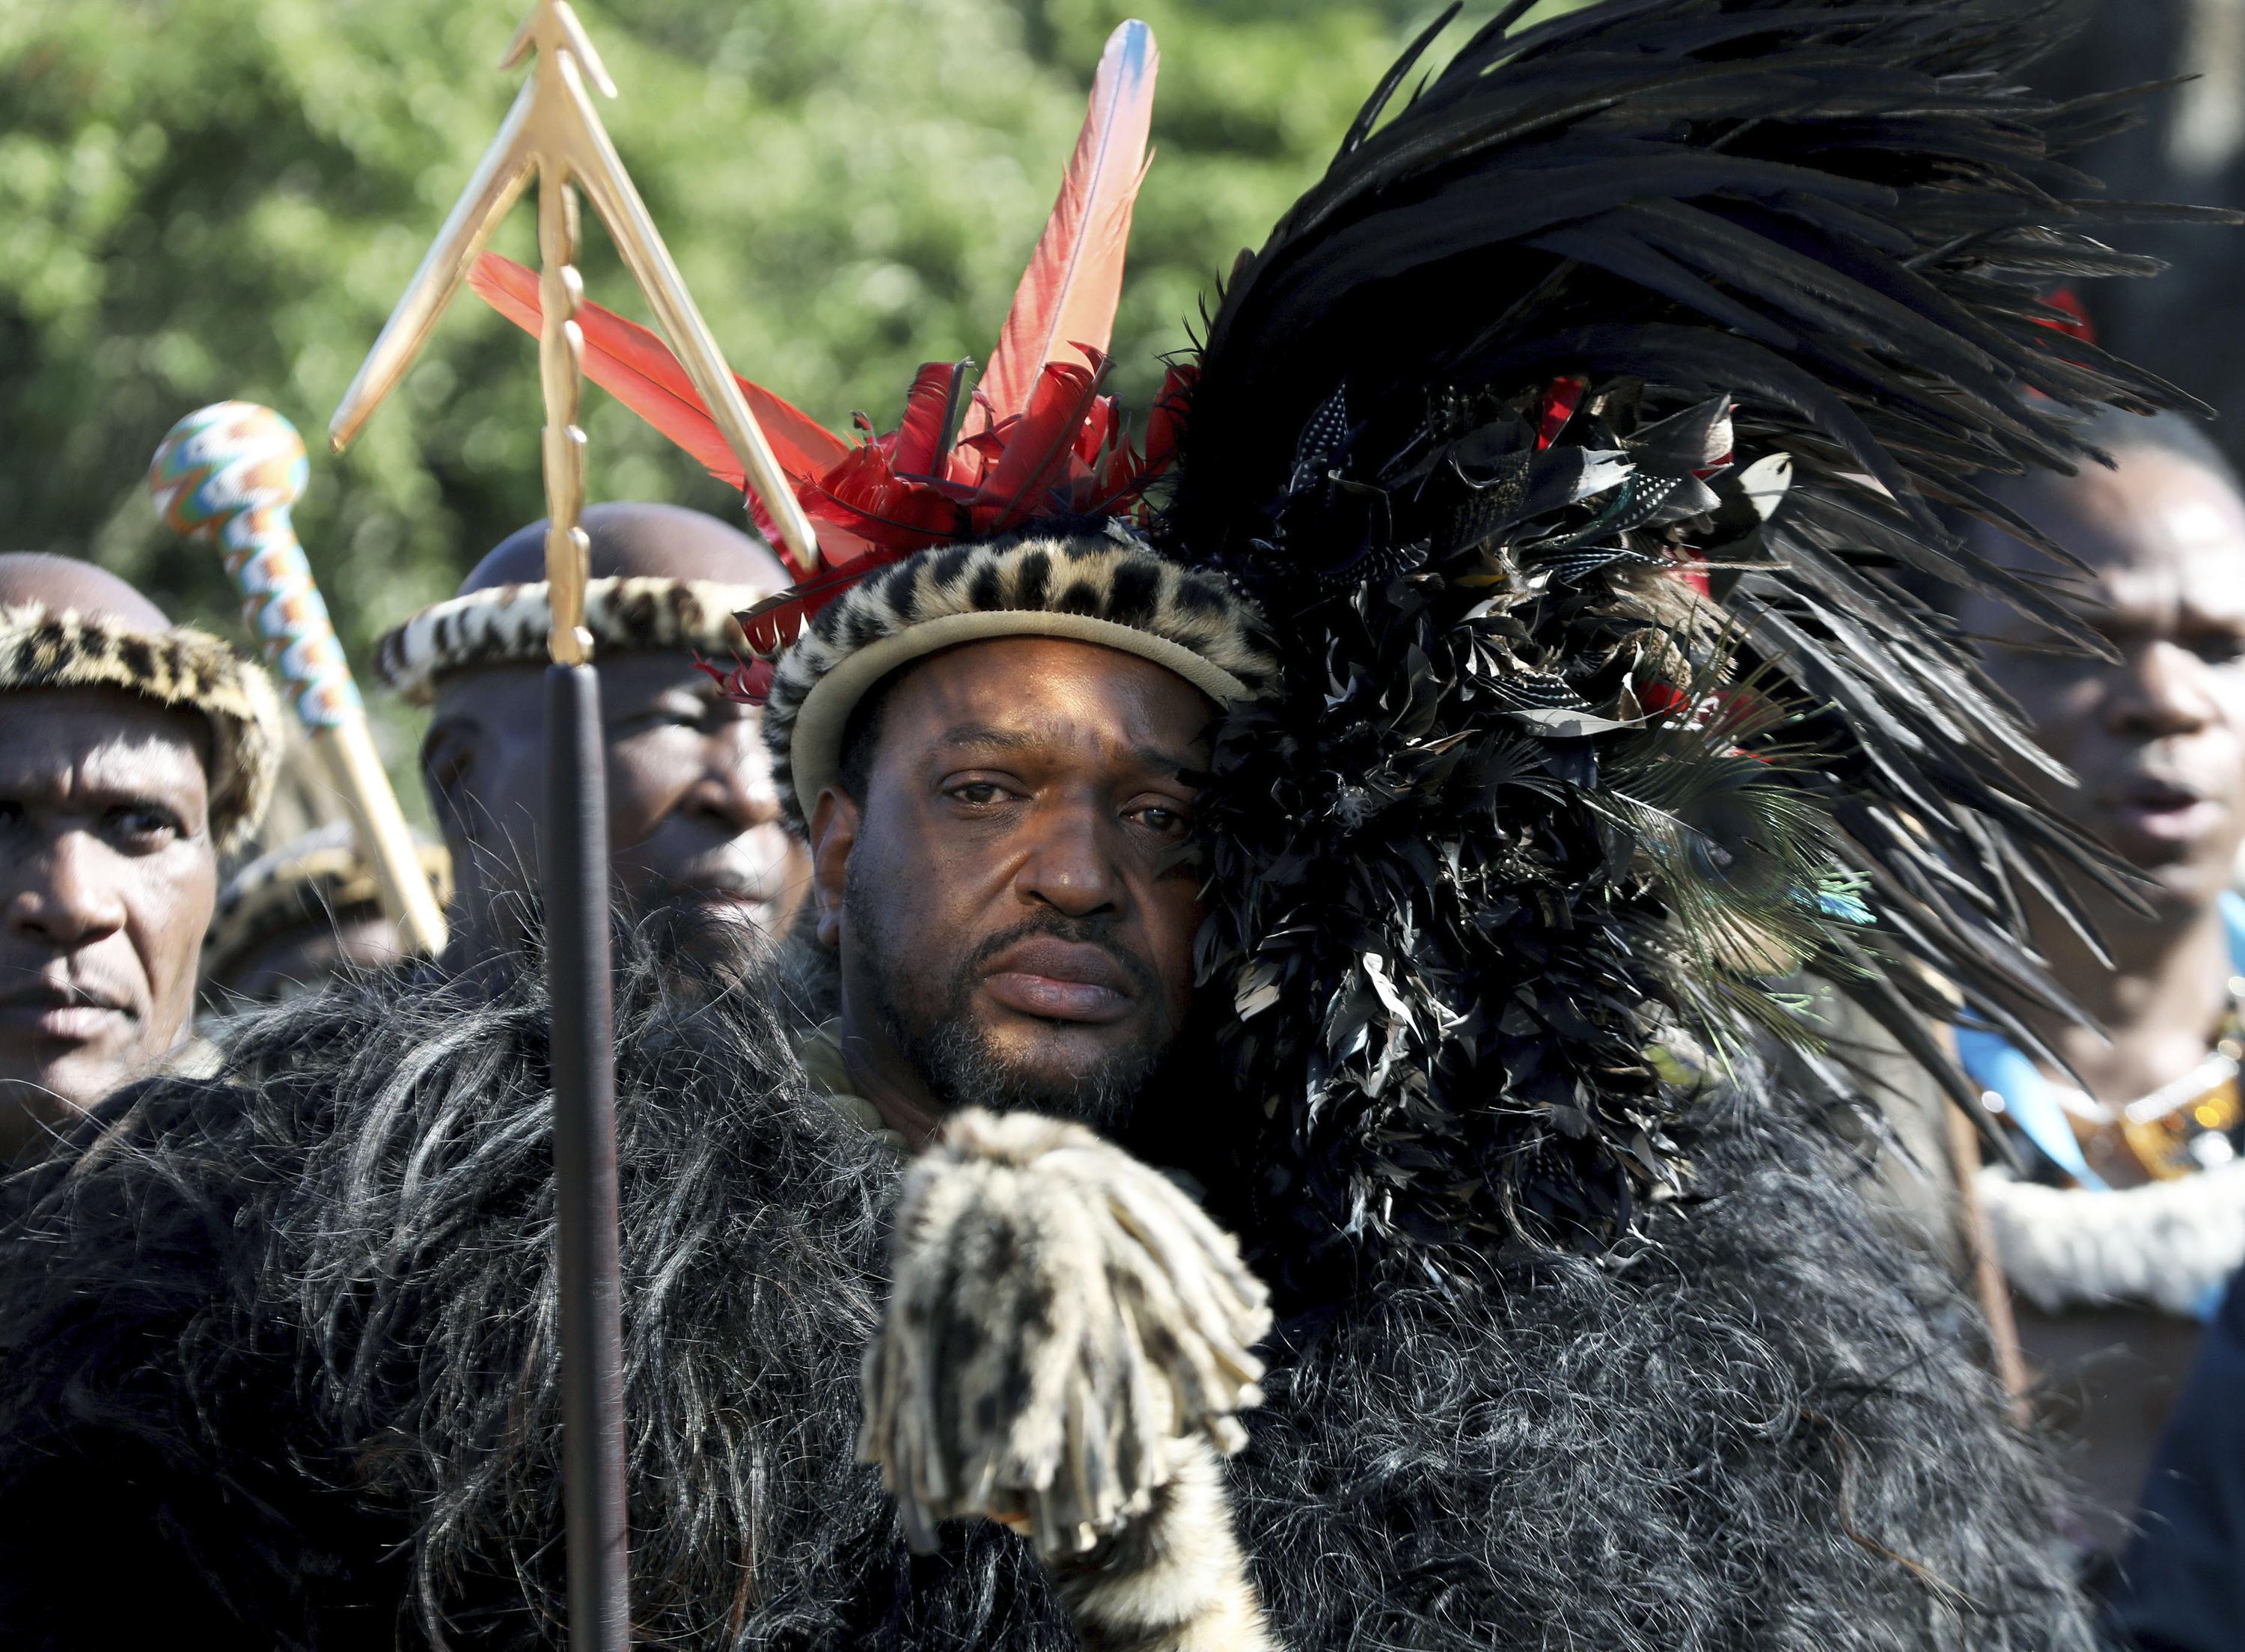 Le nouveau roi de la nation zouloue d’Afrique du Sud rejette ses rivaux